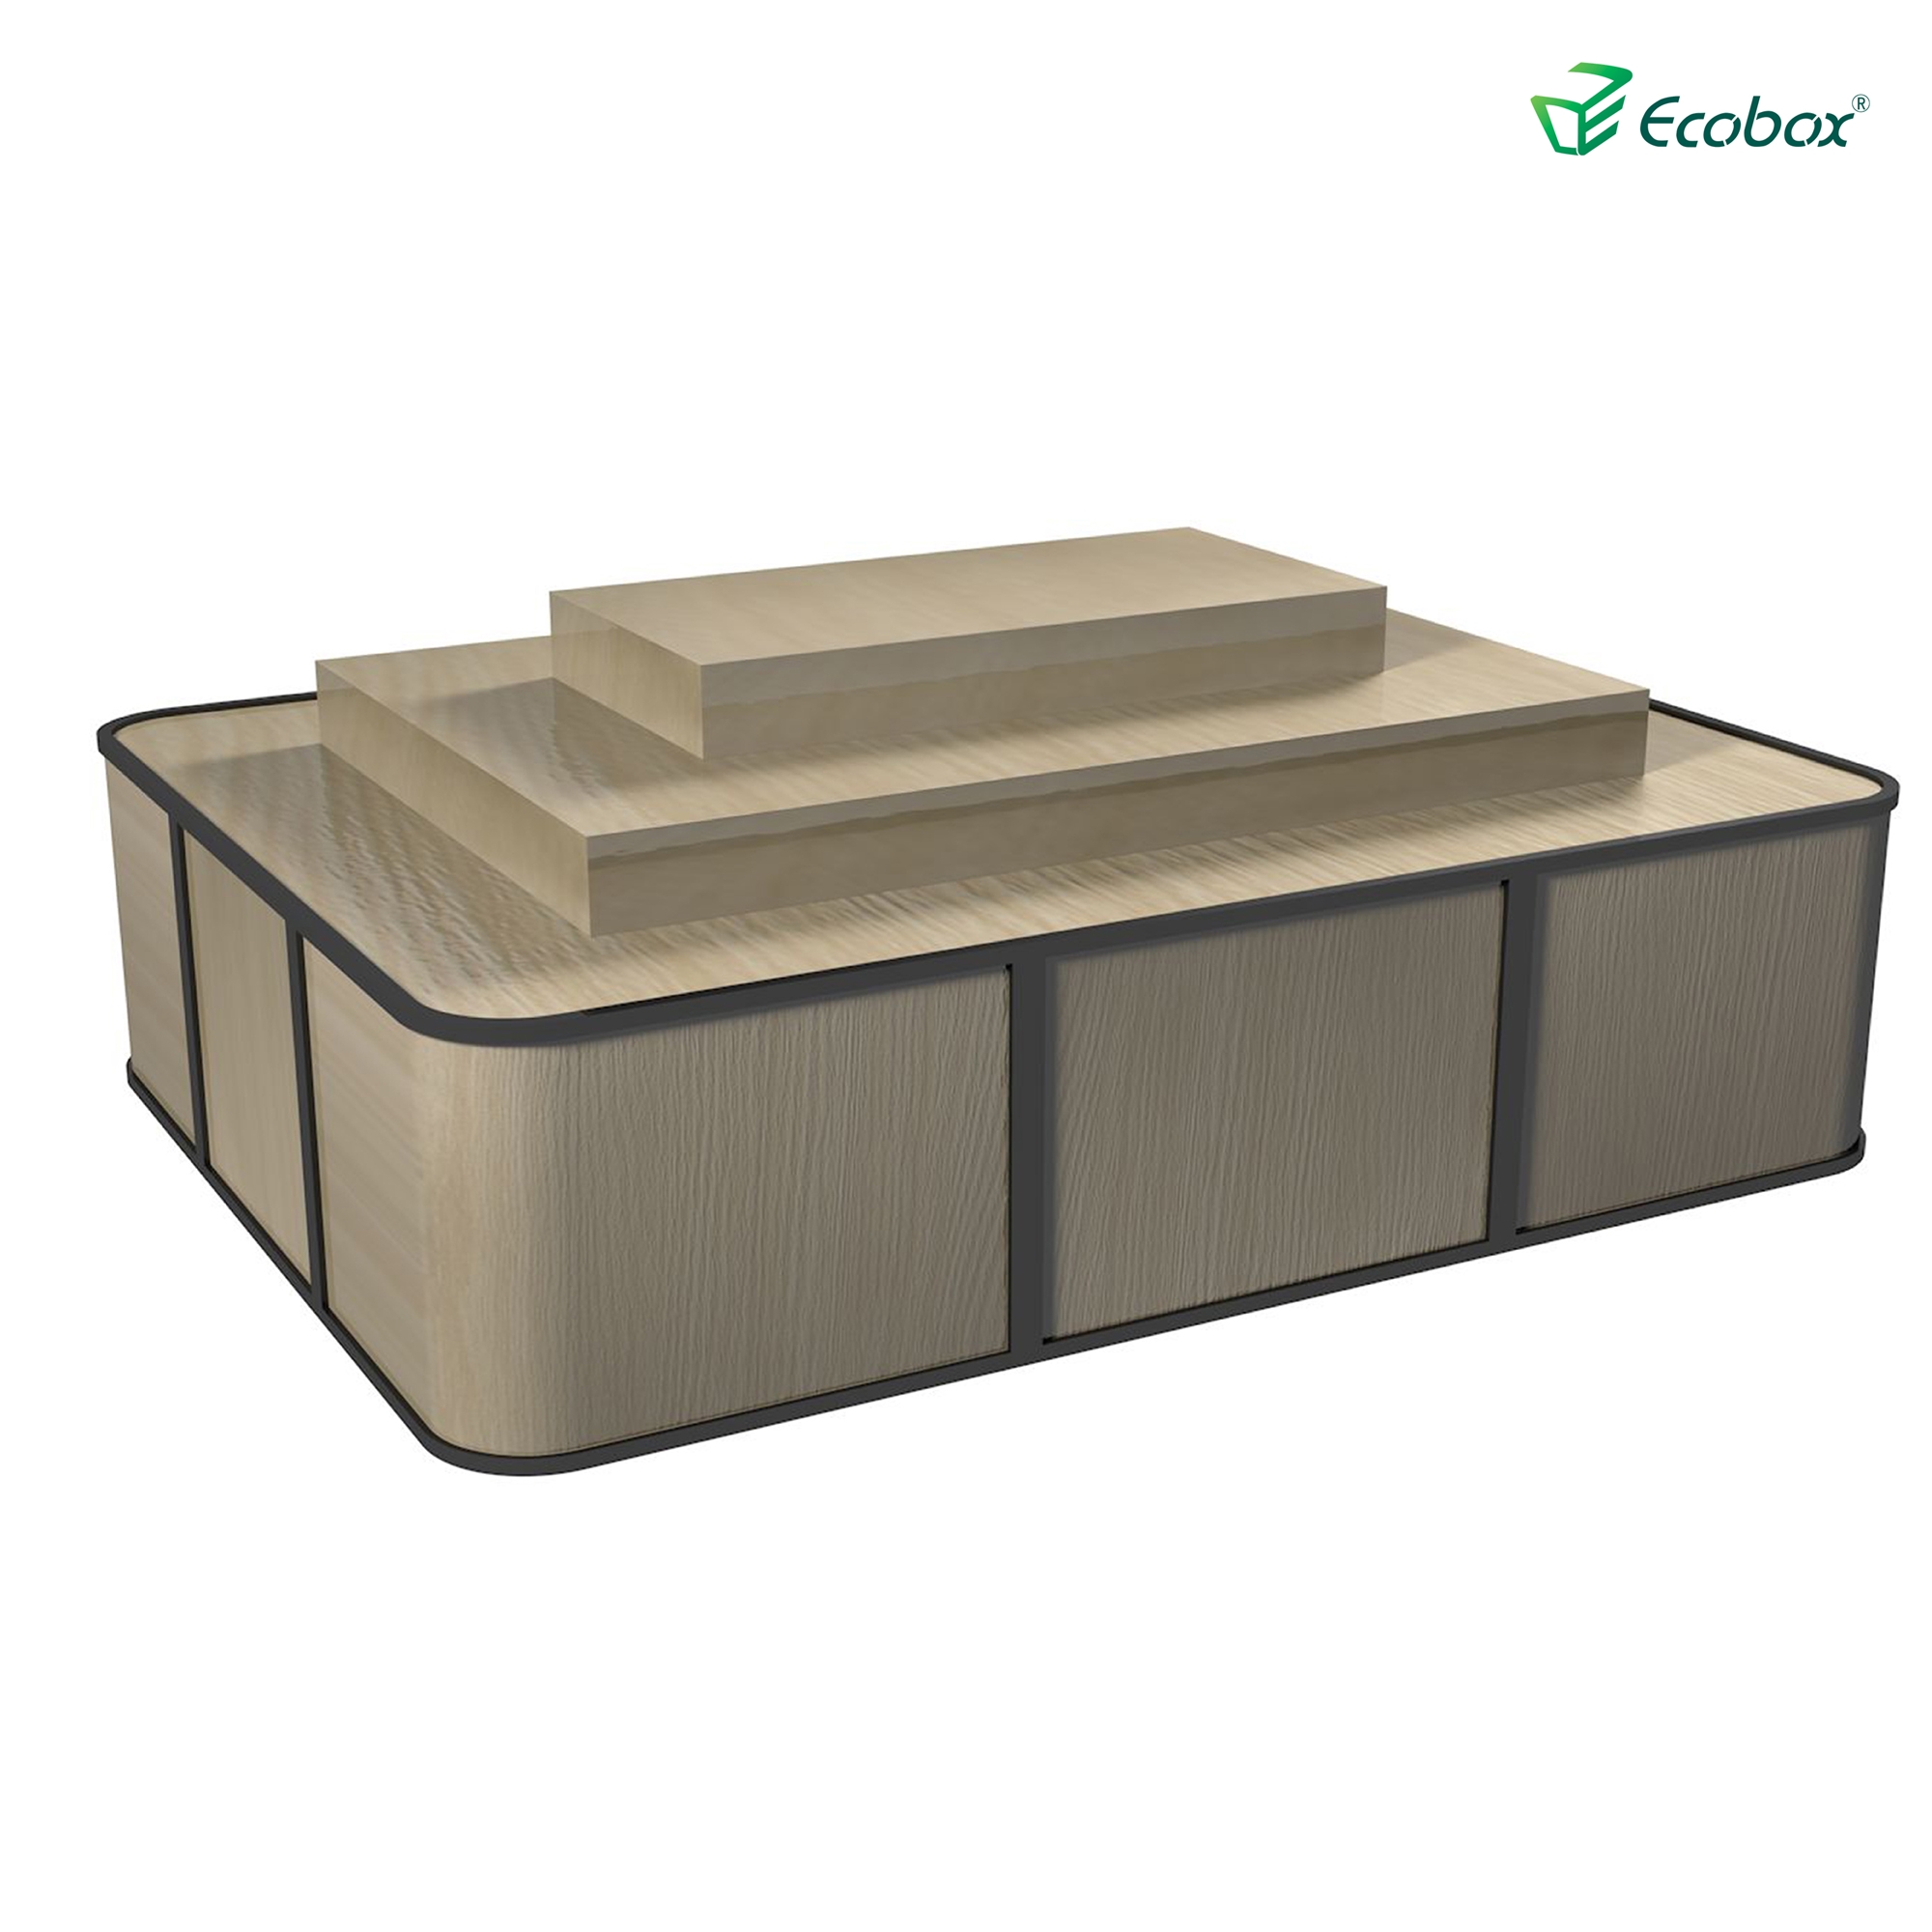 Prateleira da série ecobox g004 com caixas a granel ecobox displays de alimentos a granel de supermercado